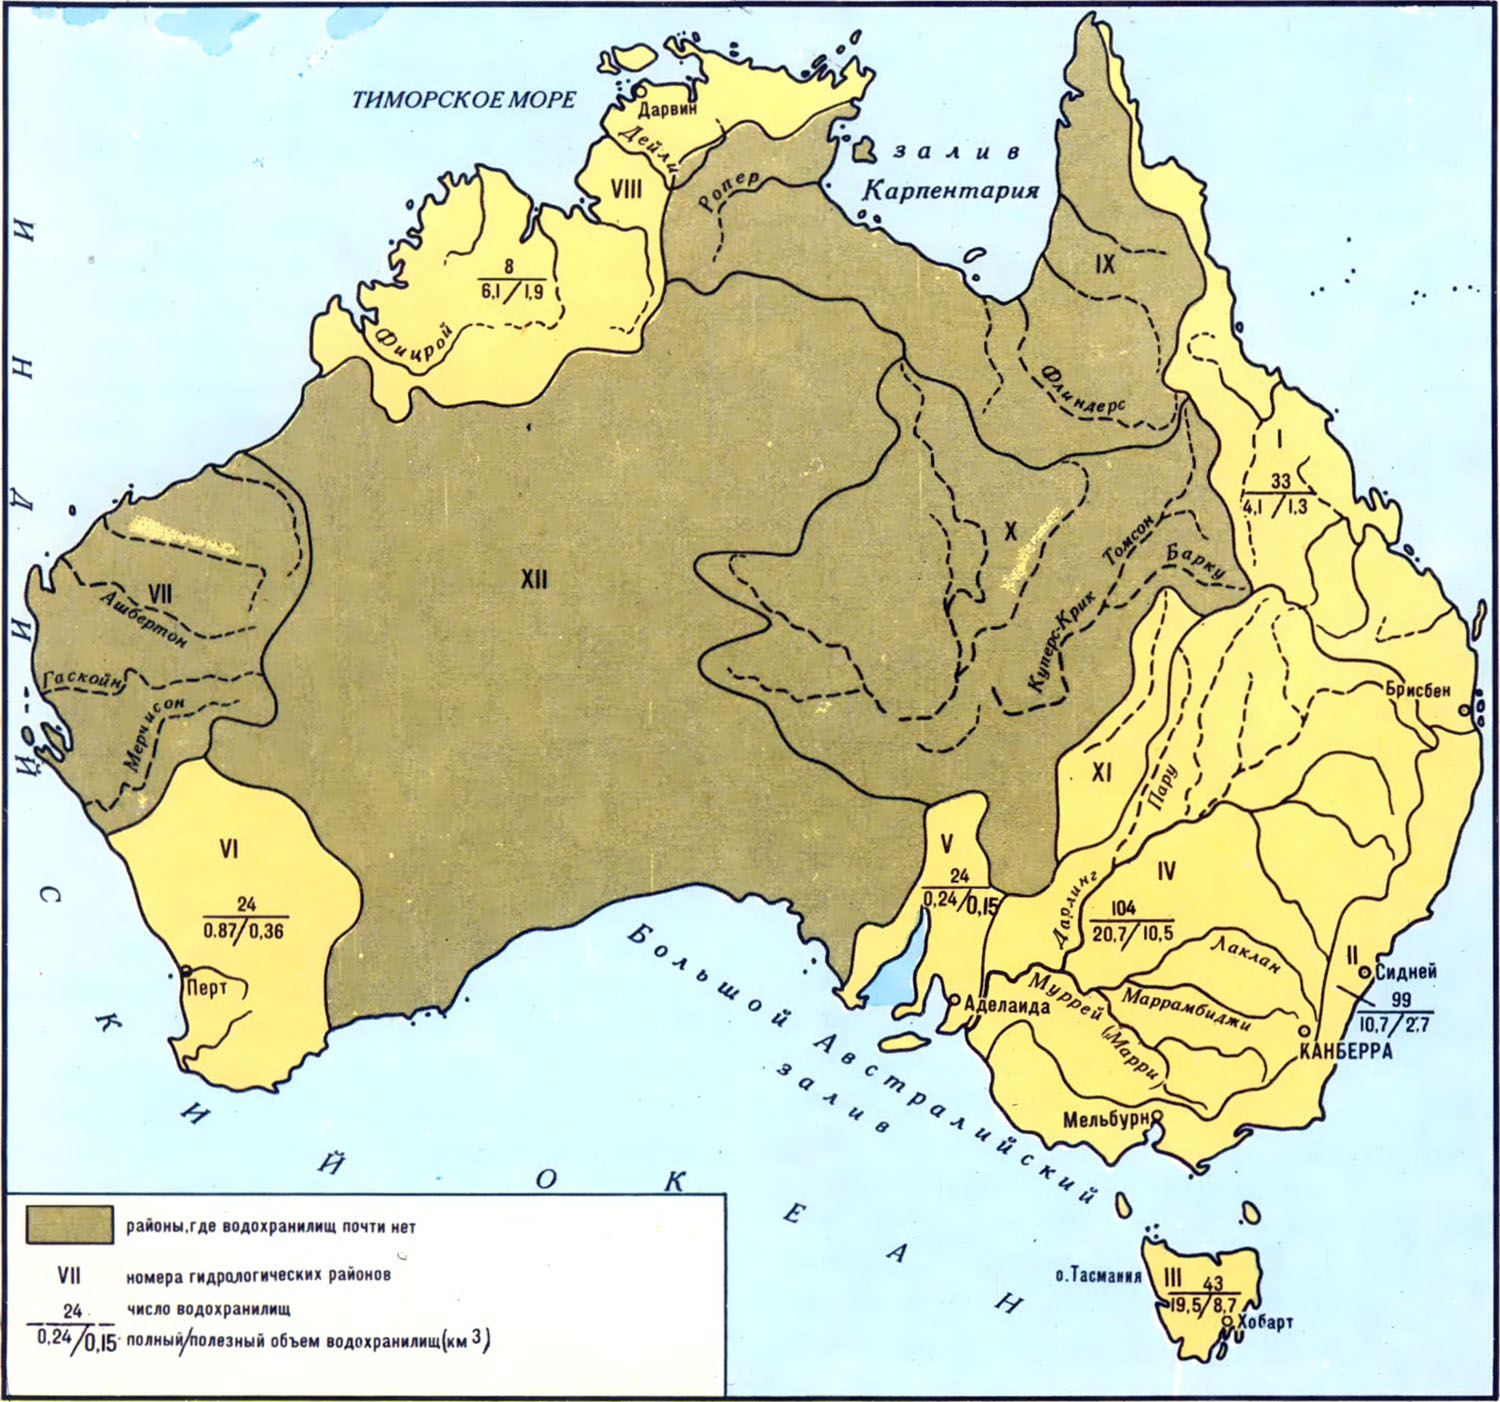 Реки озера австралии 7. Река Купер крик на карте Австралии. Озеро Купер крик на карте Австралии. Река Купер крик в Австралии на карте контурной. Река Куперс крик на карте Австралии.